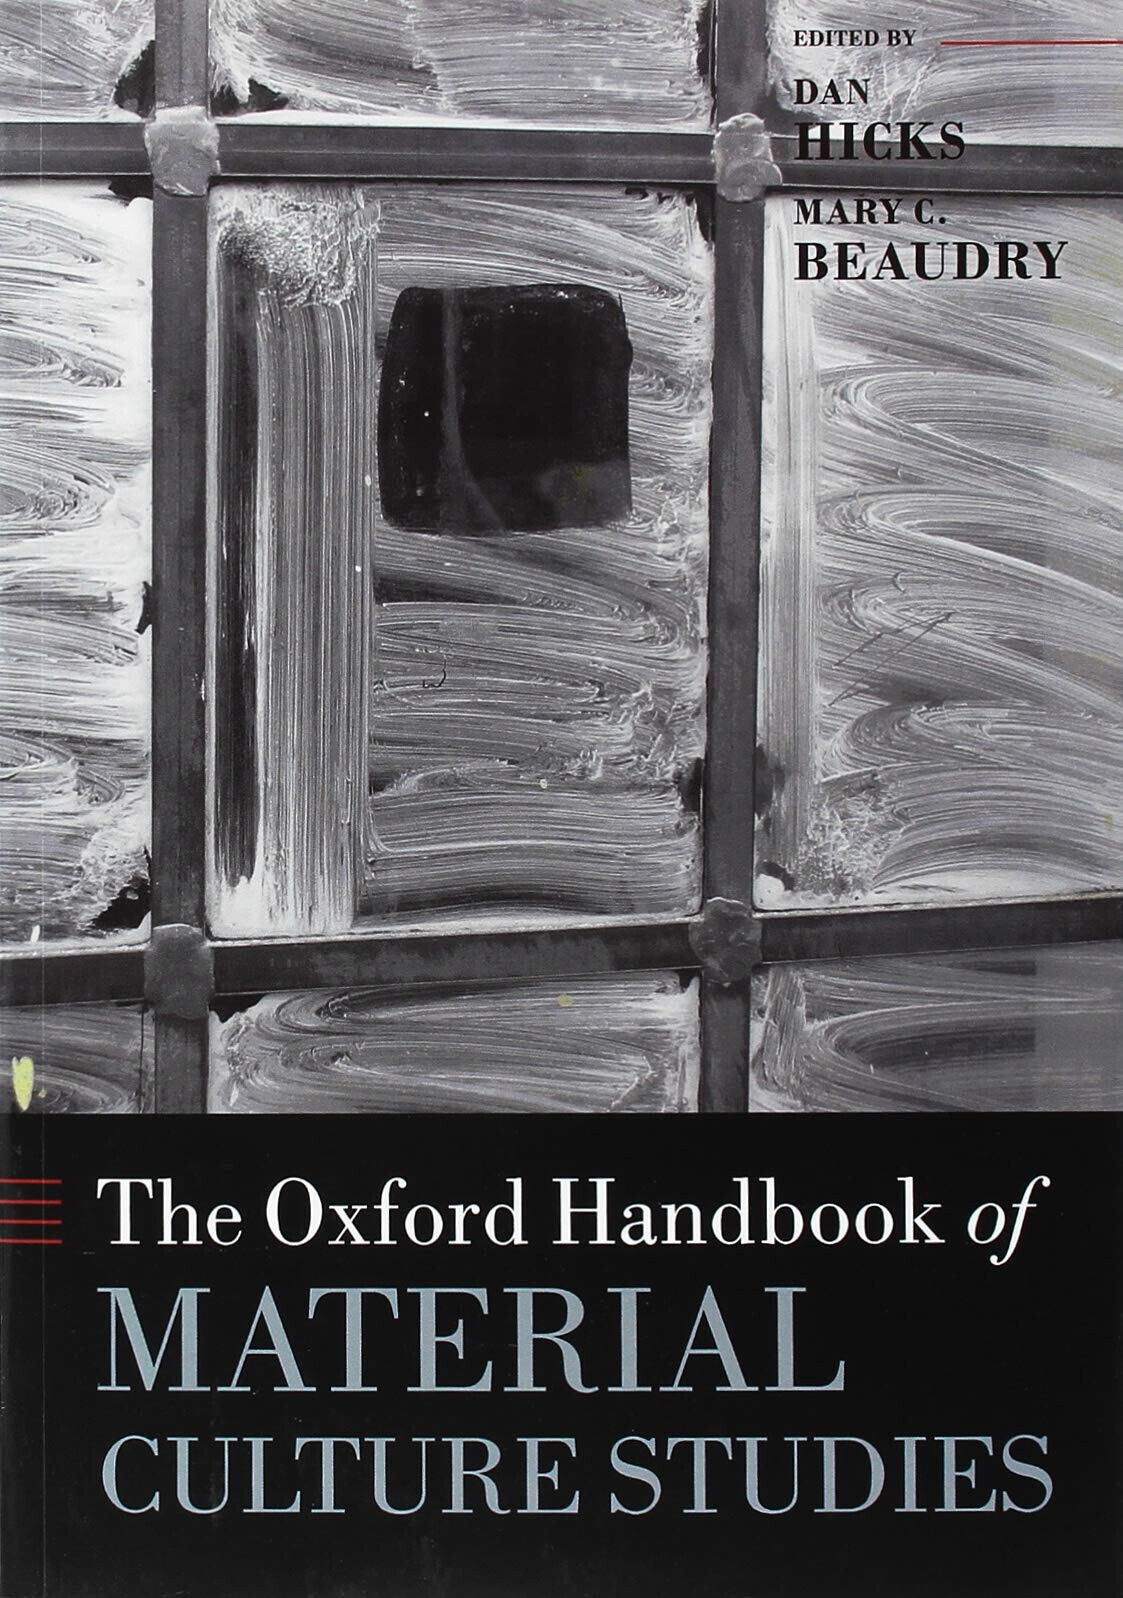 The Oxford Handbook of Material Culture Studies - Dan Hicks - Oxford, 2018